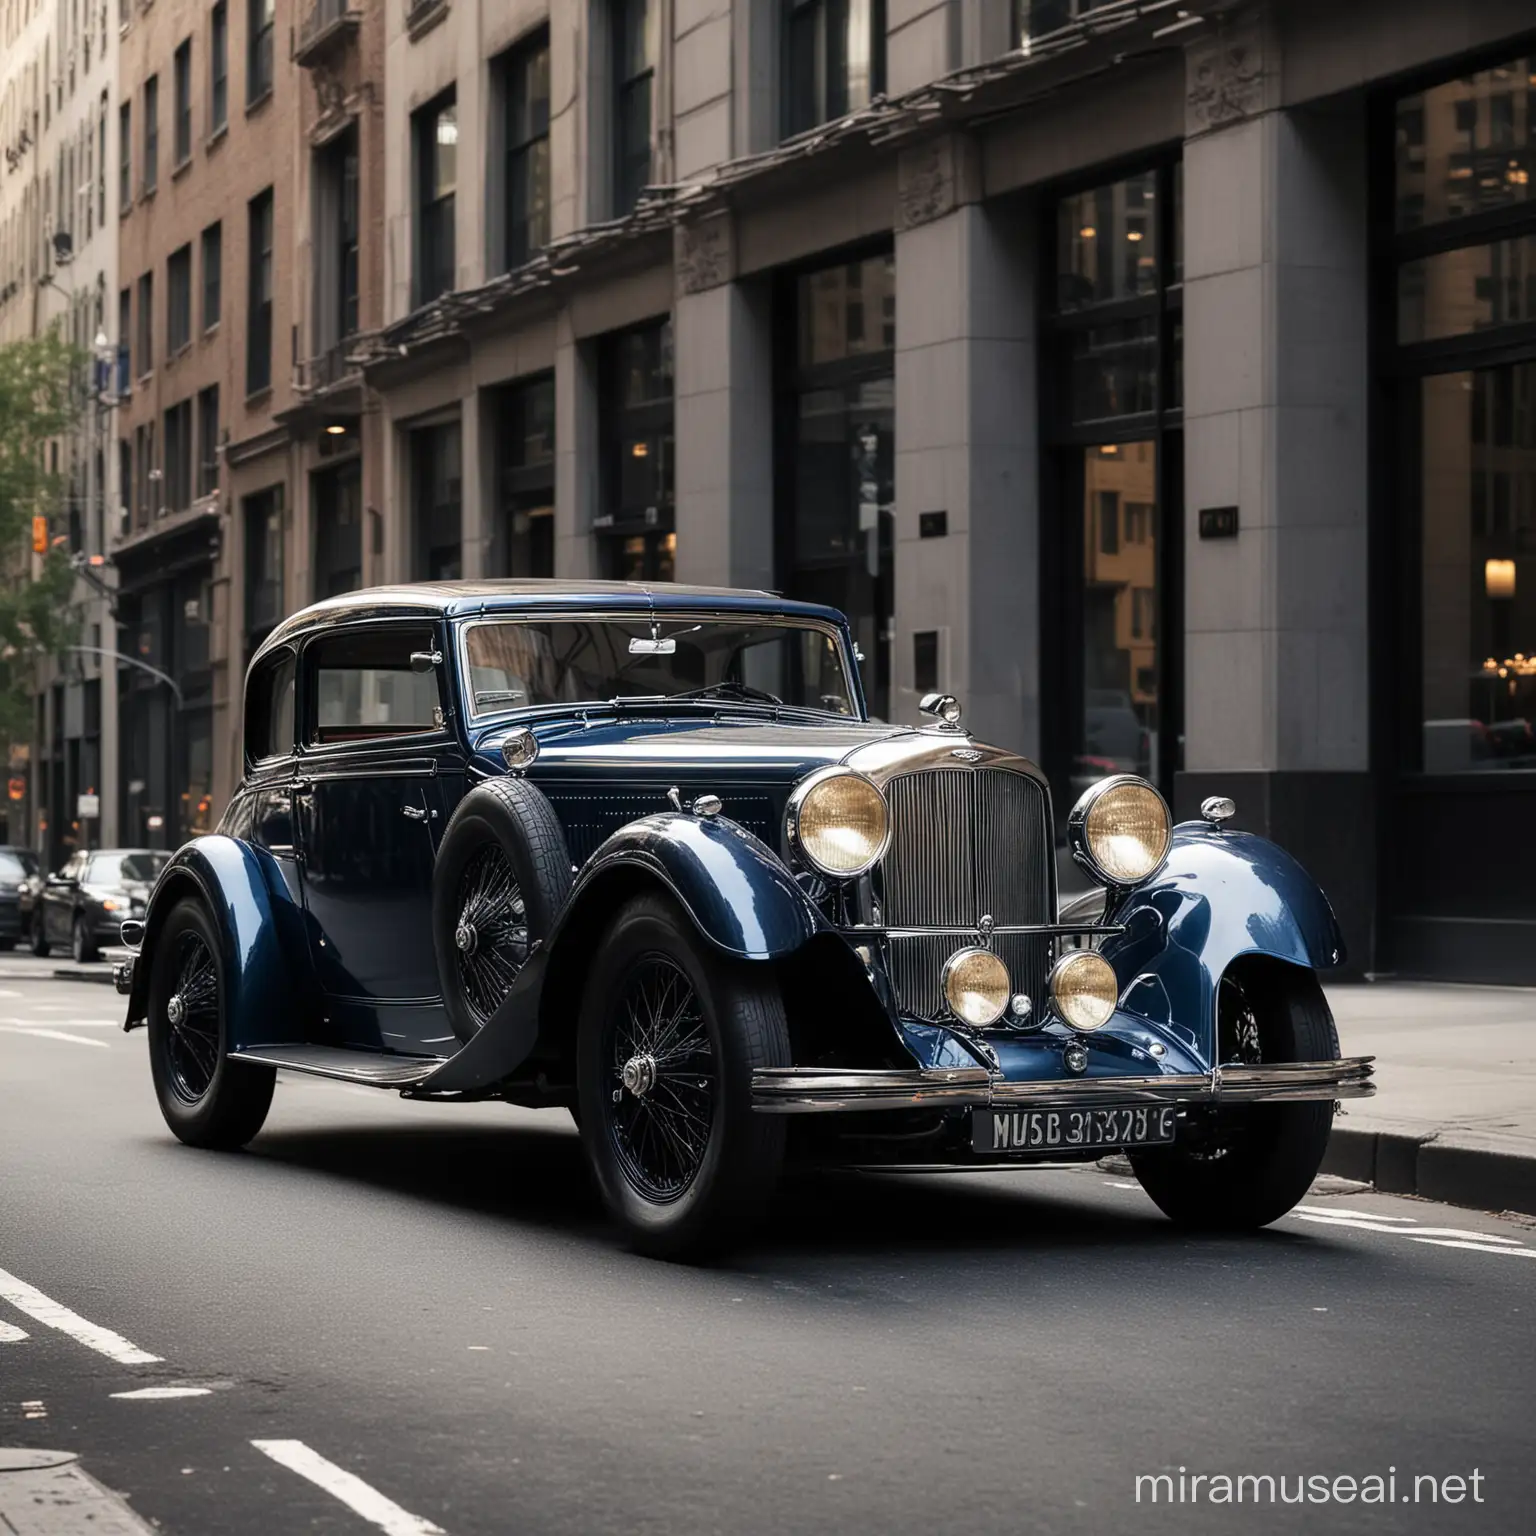 Aston Martin 1932, Clásico, color azul gris oscuro, estacionado en una calle de New York City, a las 5 de la tarde, la disposición de la escena fotográfica en perspectiva hace que la luz ambiental y este coche resalten de muy bella manera.